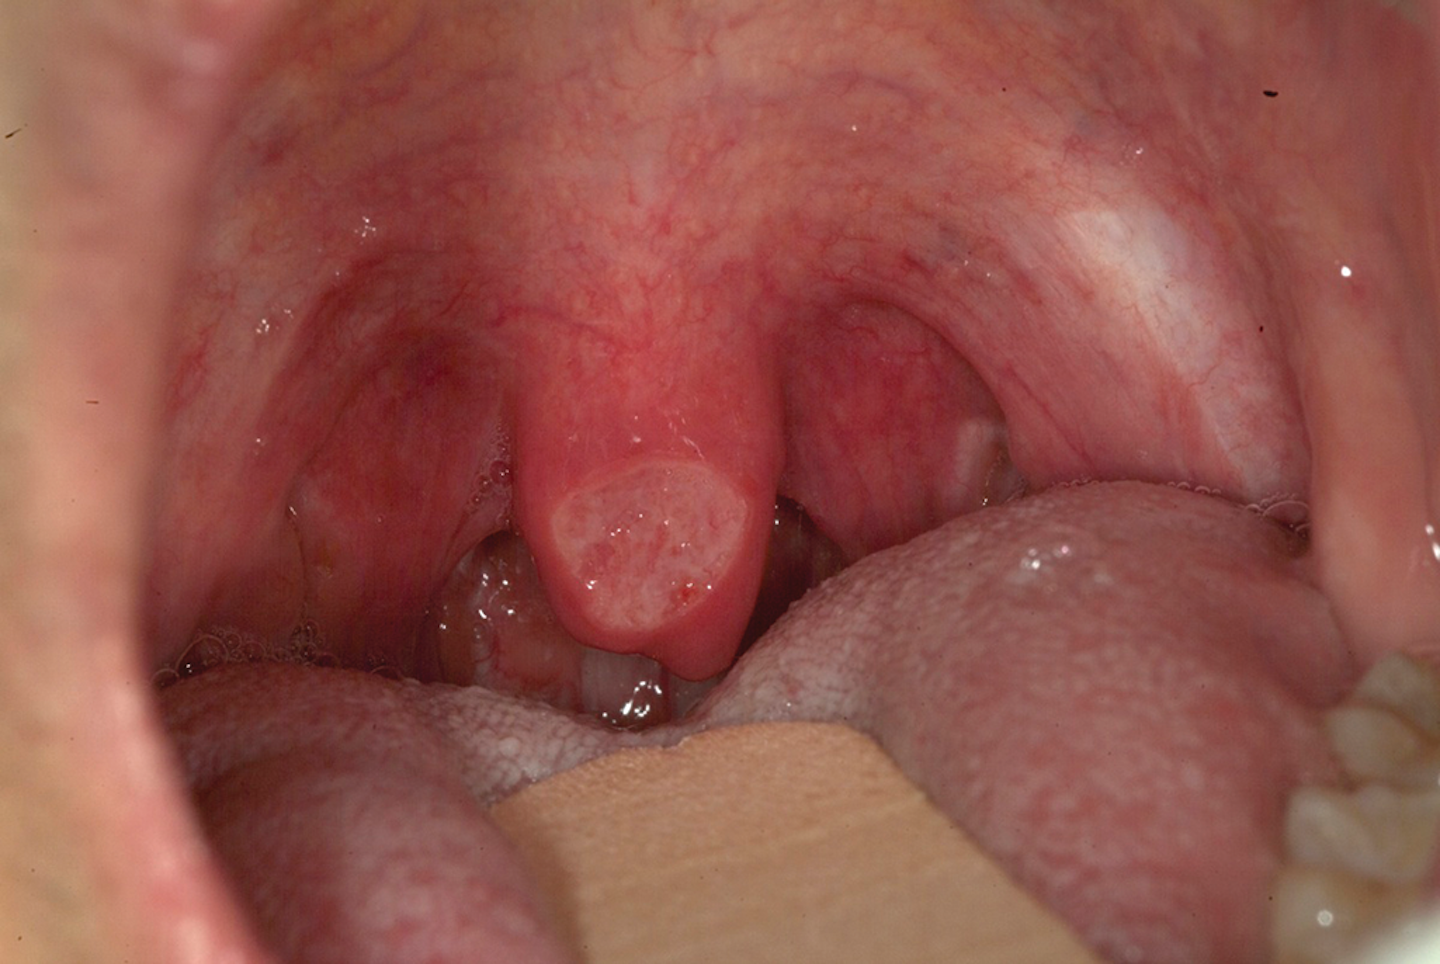 Figura 4: Úvula con úlcera. Foto cortesía del Dr. A. Ross Kerr.Figura 4: Úvula con úlcera. Foto cortesía del Dr. A. Ross Kerr.